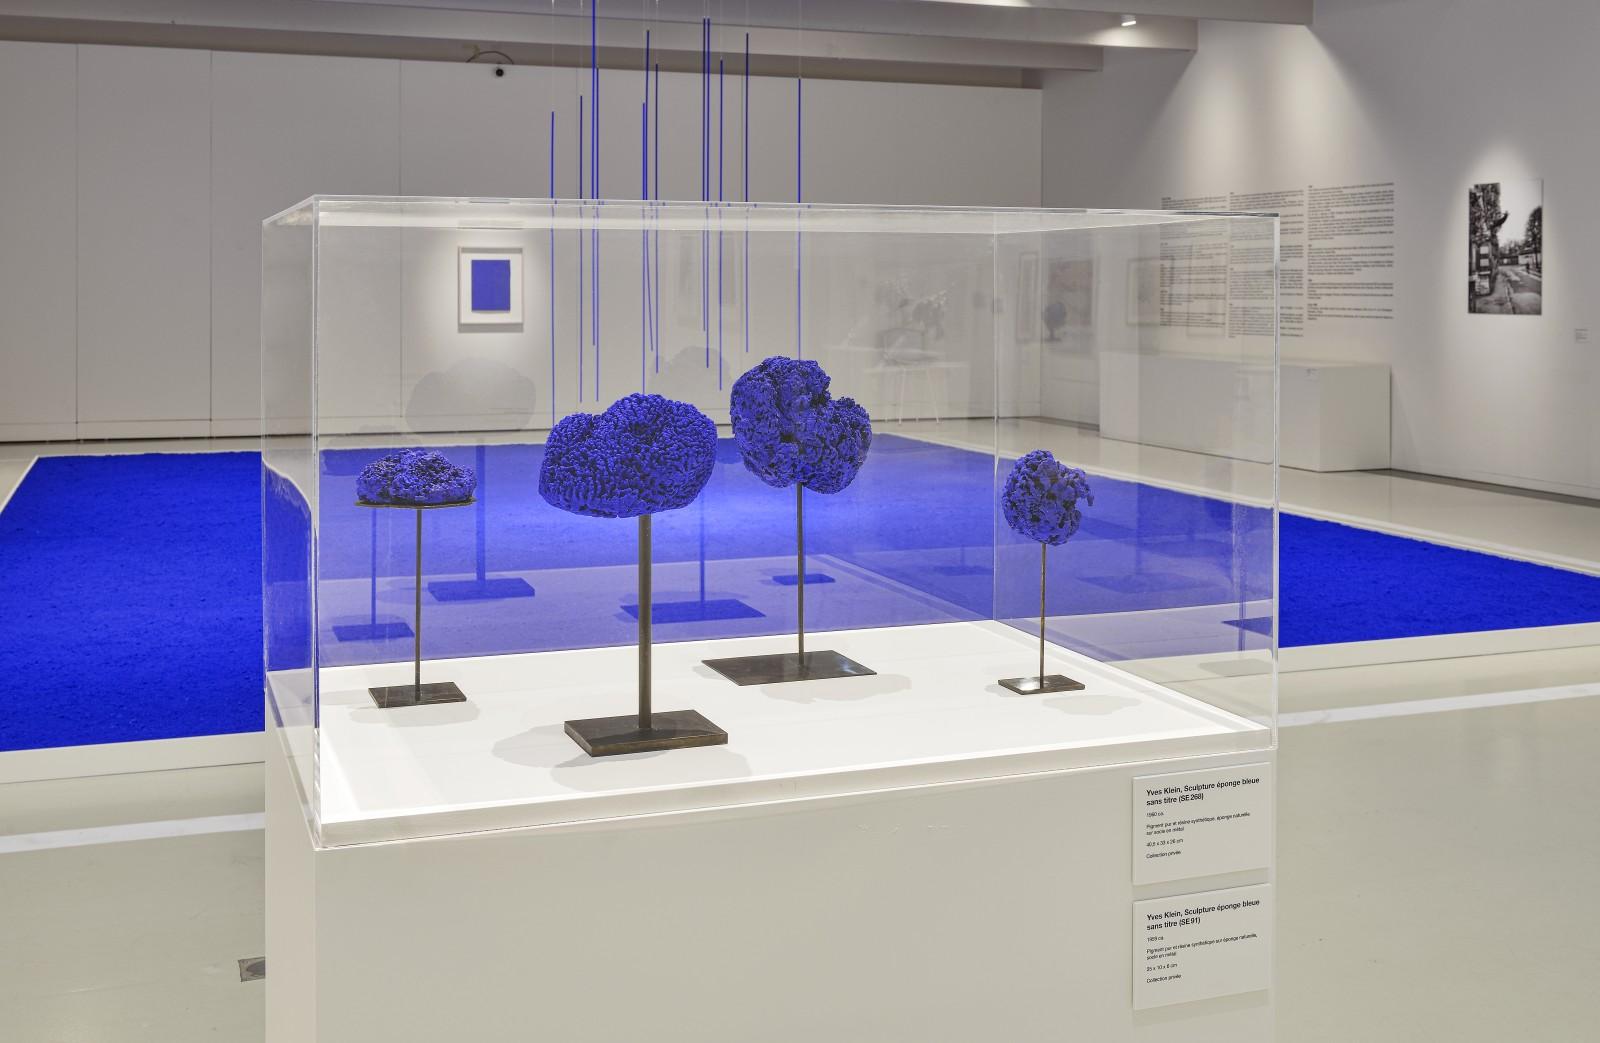 Vue de l'exposition, "Yves Klein - Des cris bleus", Musée Soulages, 2019